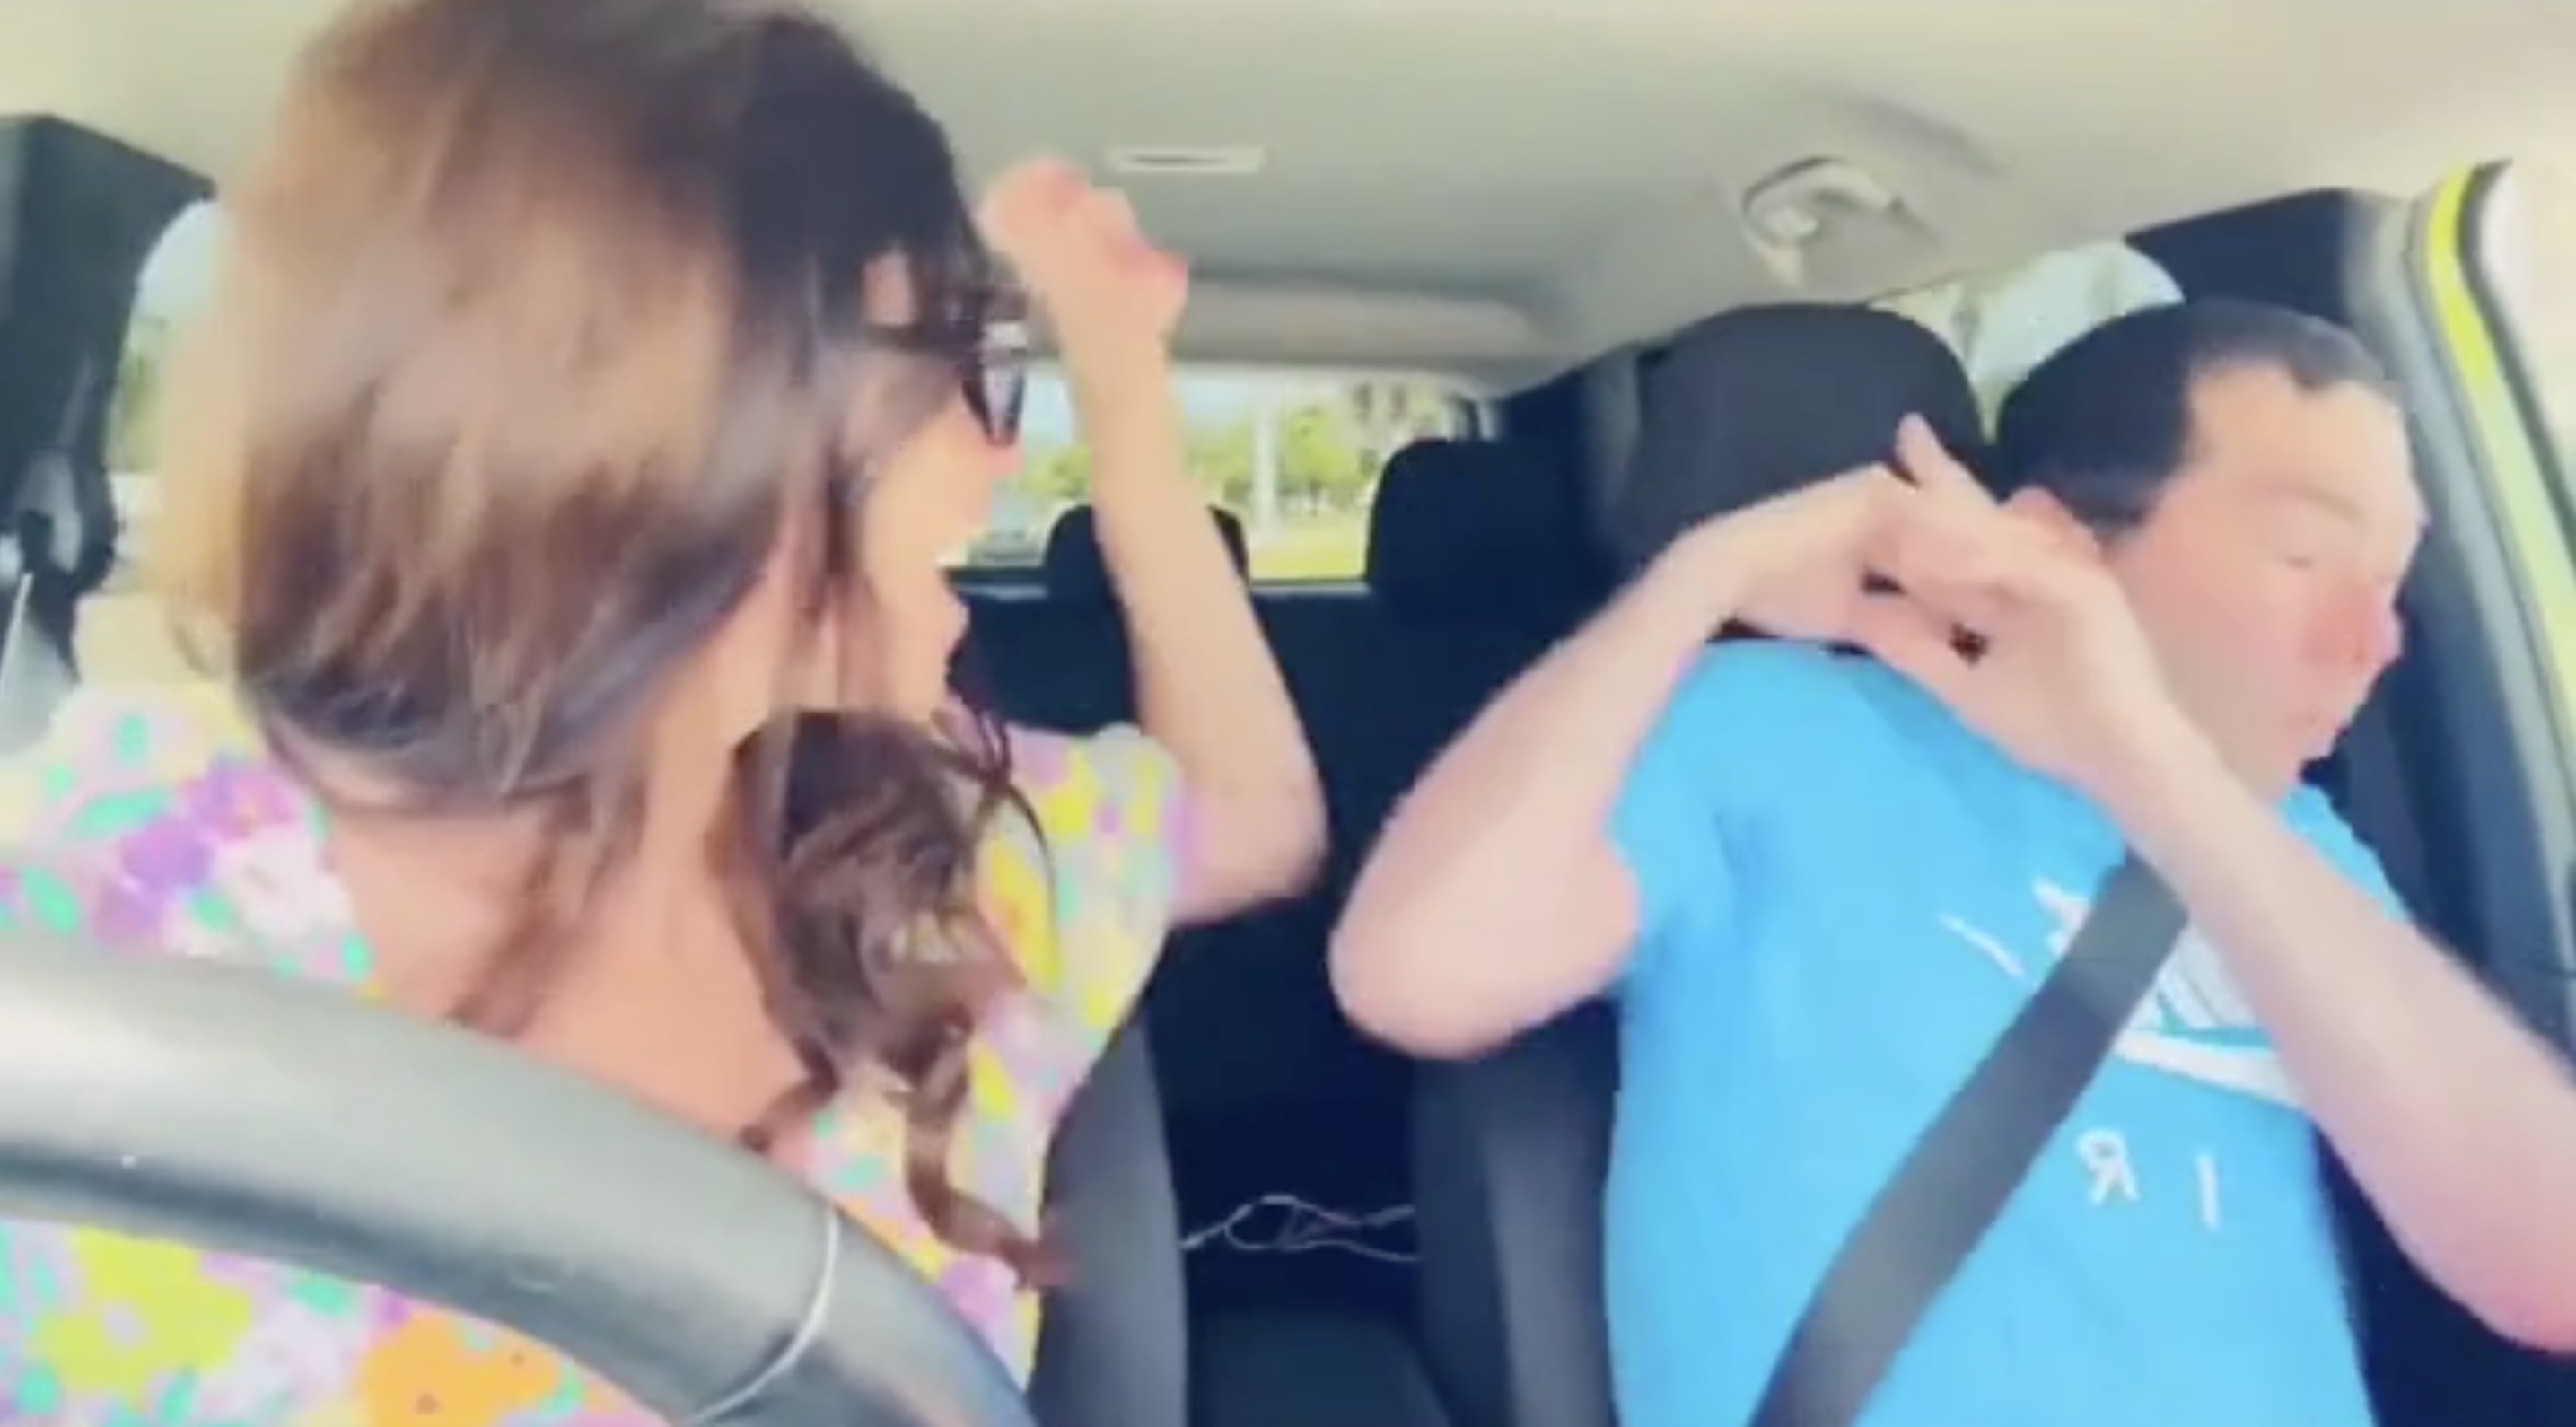 elisa jordana assaulting her fiance in a car